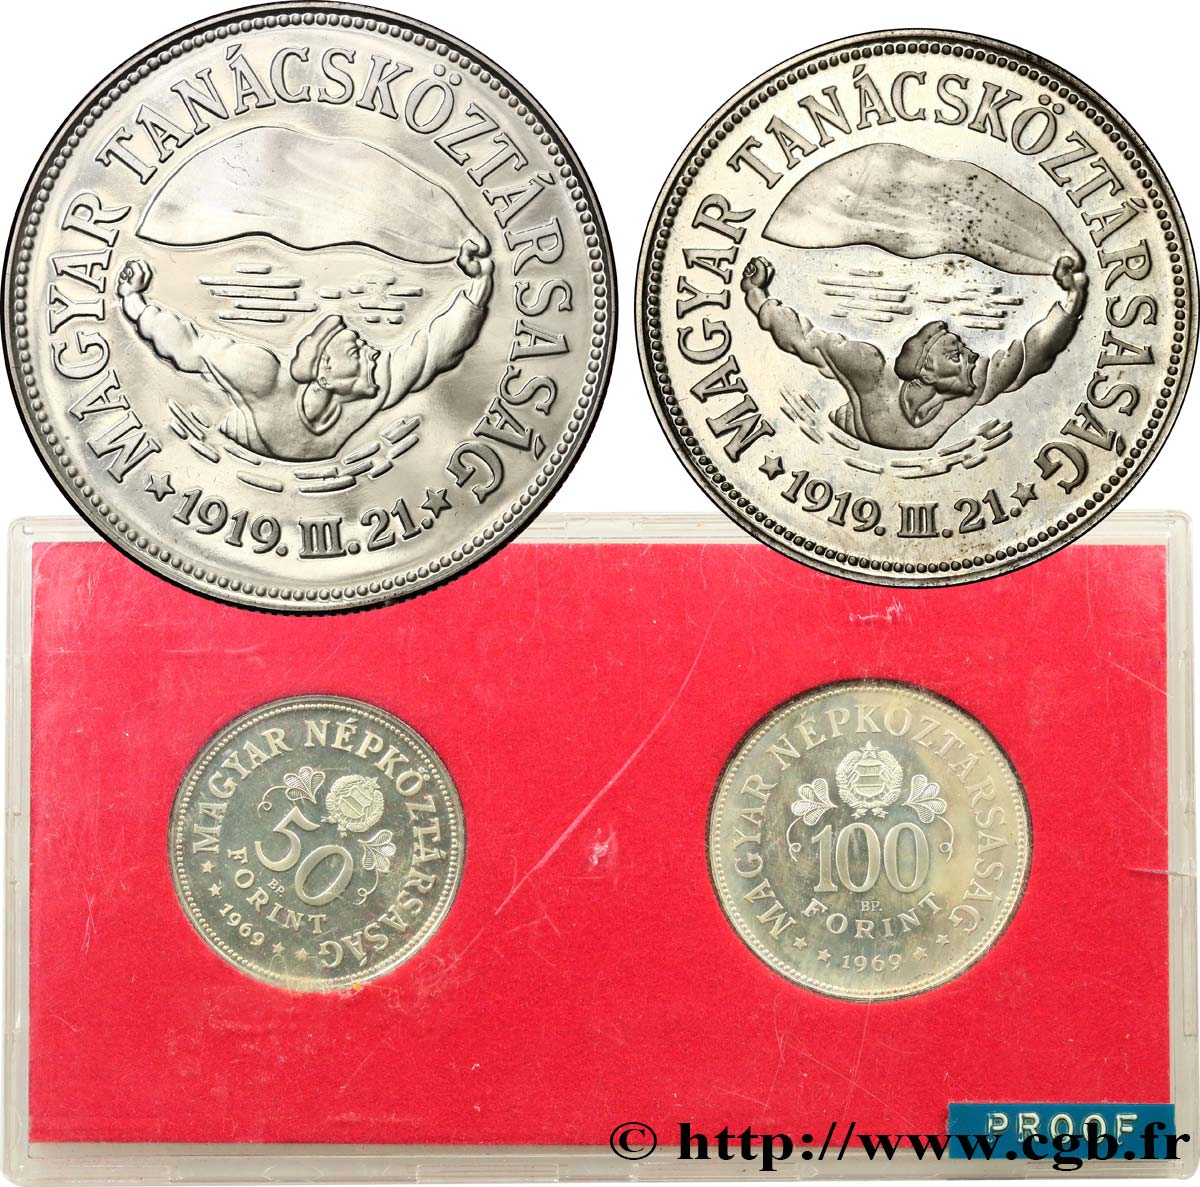 UNGARN Série Proof - 2 monnaies - 50e anniversaire des soviets du 31 mars 1919 1969 Budapest Polierte Platte 